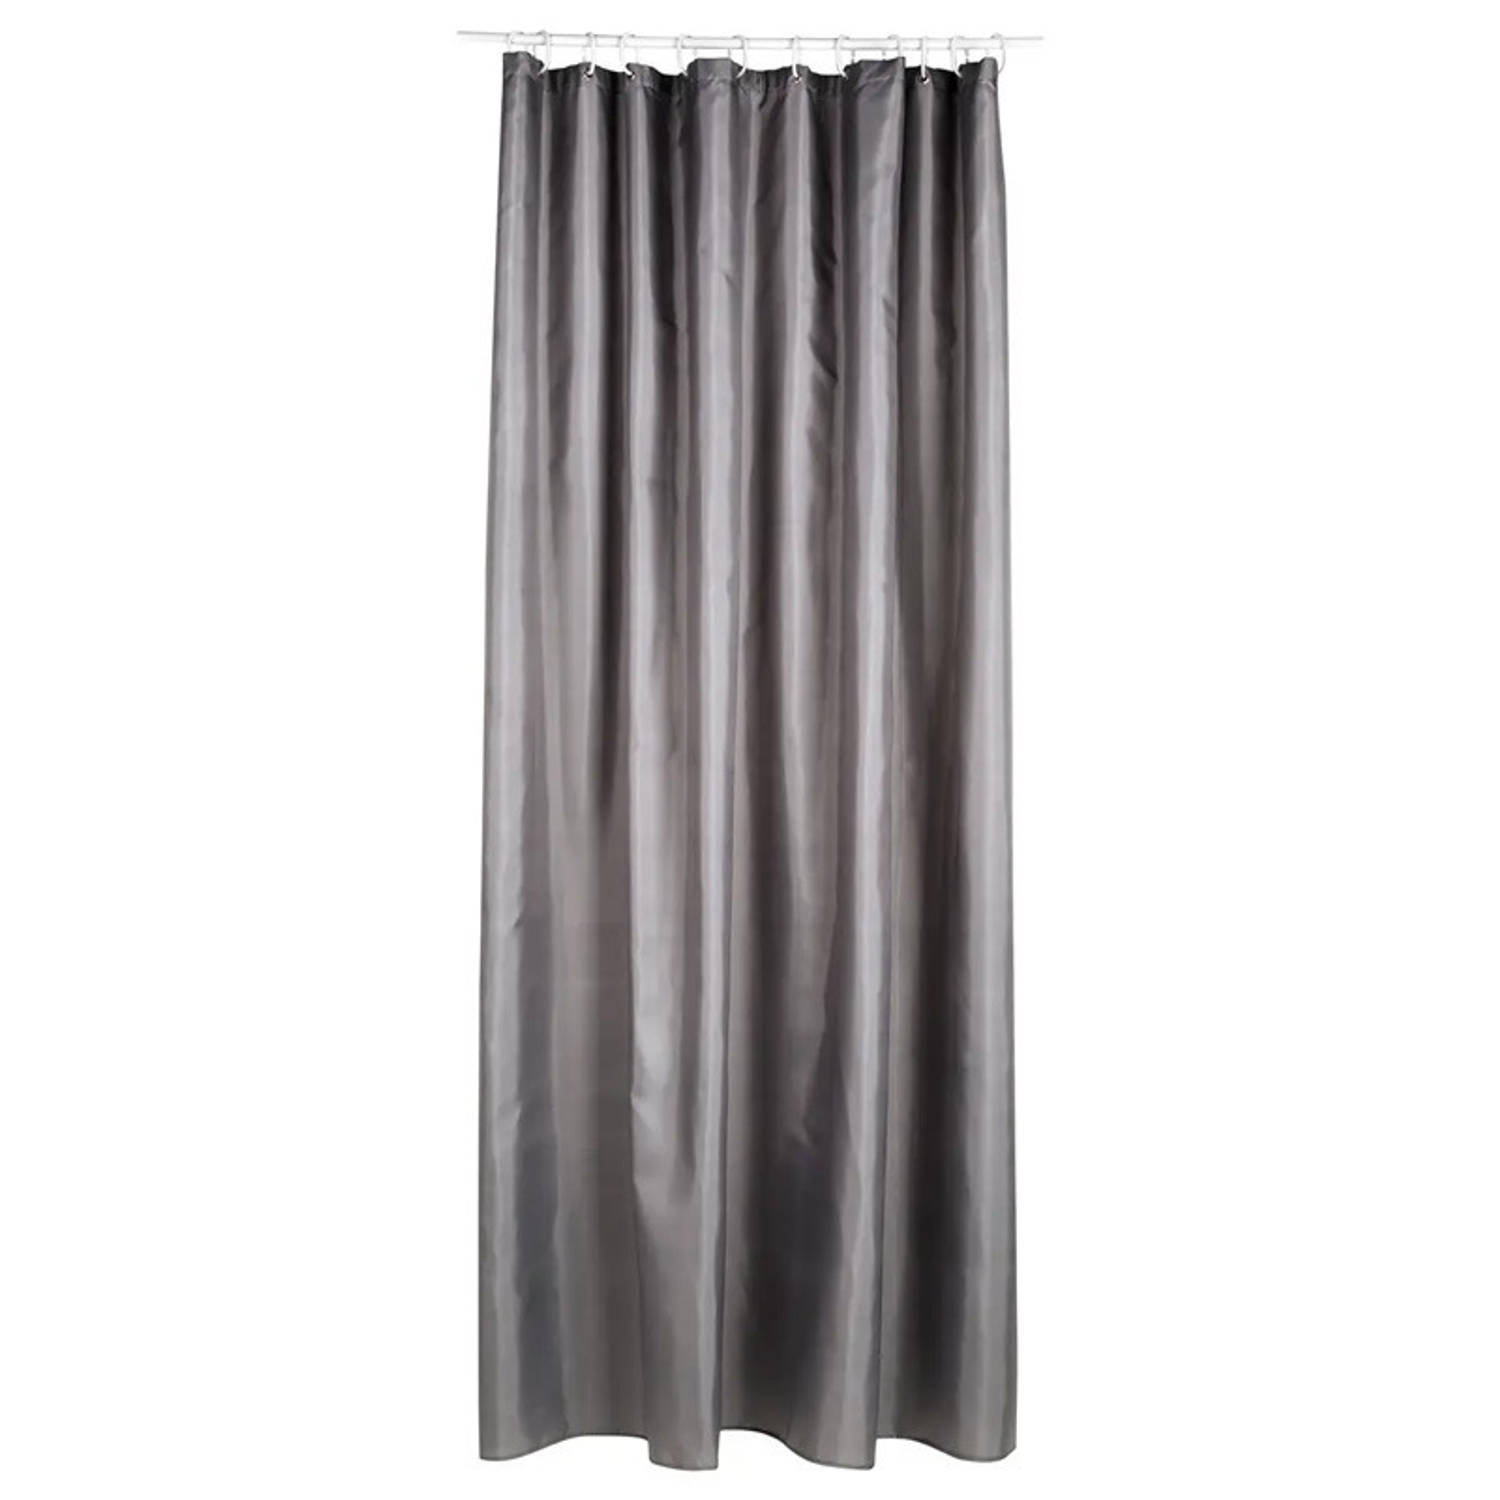 5Five Douchegordijn grijs polyester 180 x 200 cm inclusief ringen Douchegordijnen